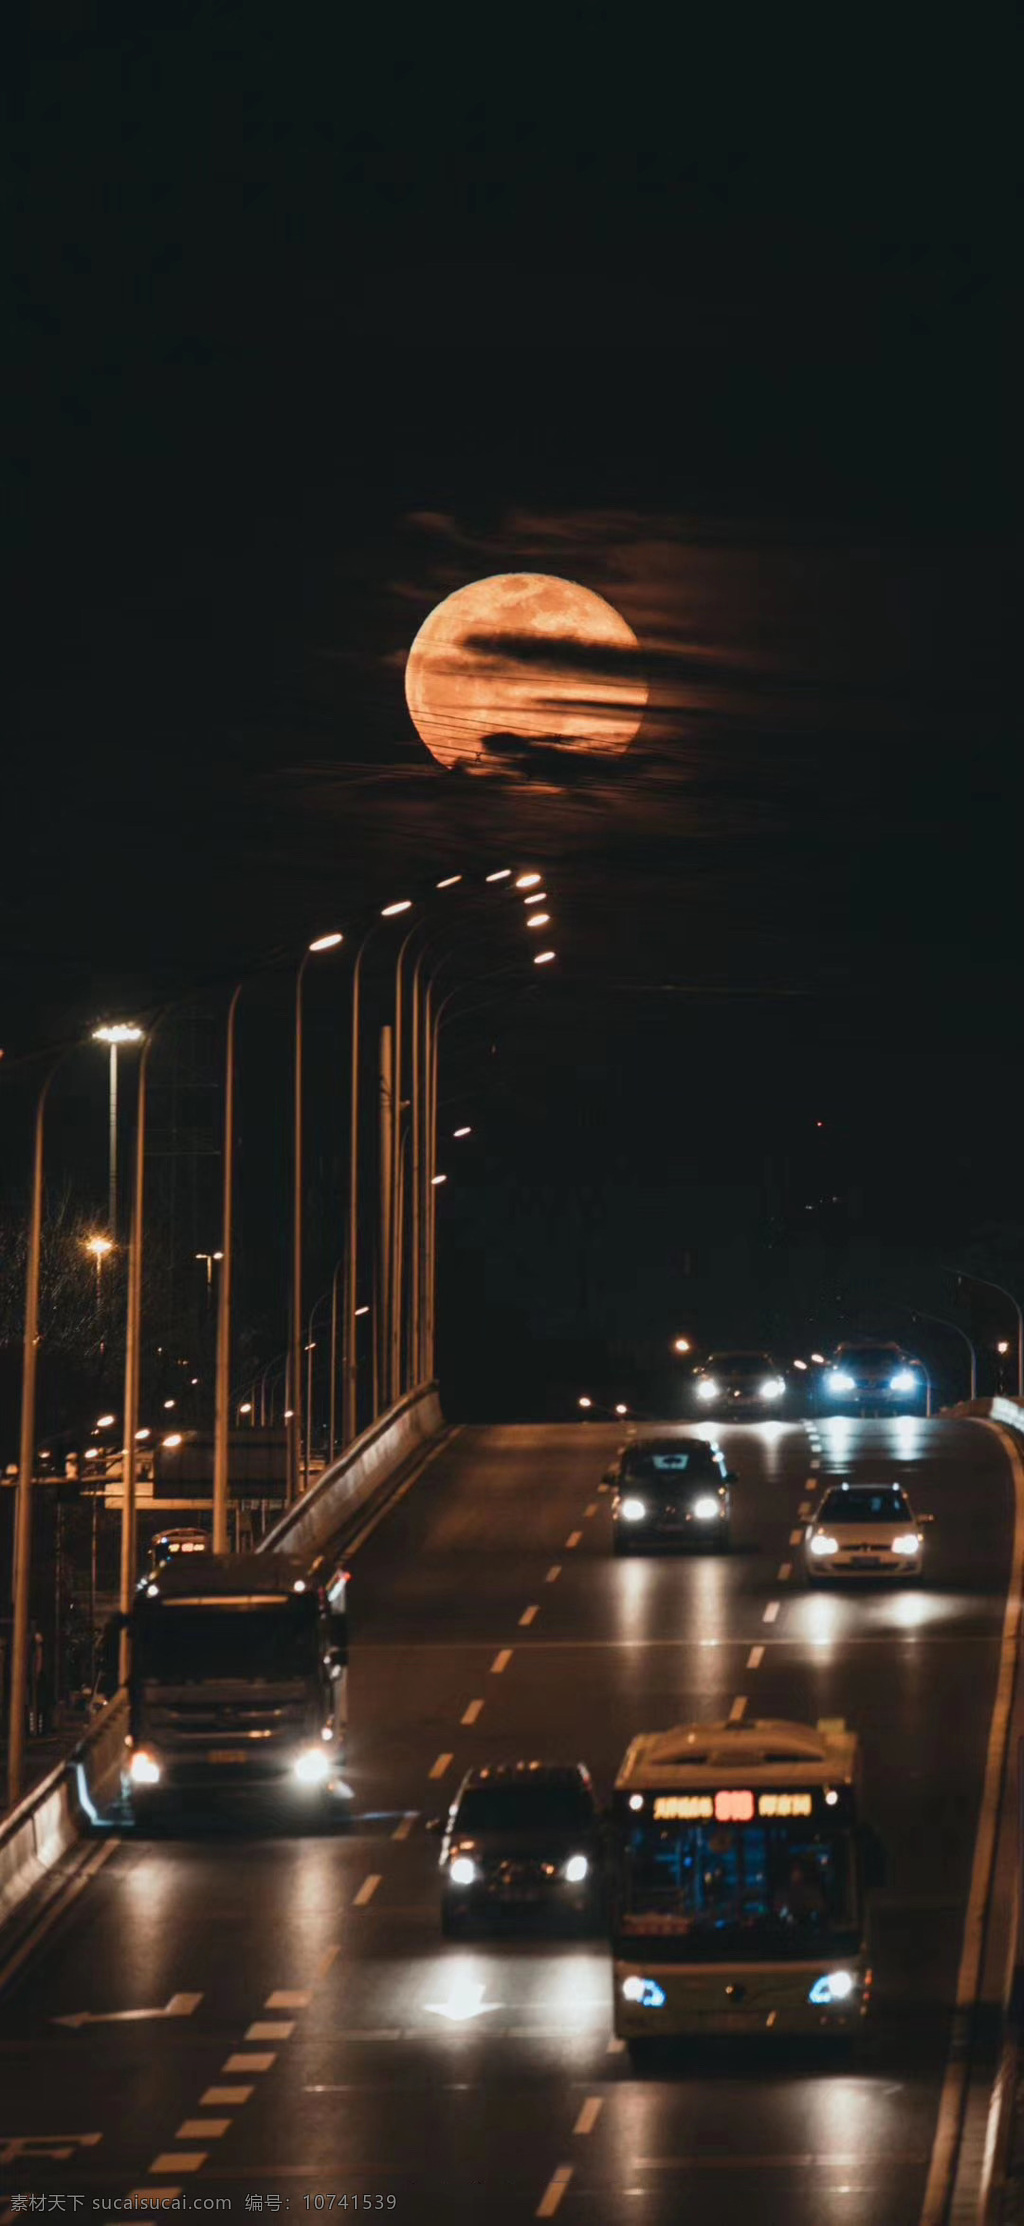 月色朦胧摄影 月色 朦胧 温暖 城市 剪影 车流 夜晚 月亮 归家 天空 十五 团圆 自然景观 自然风景